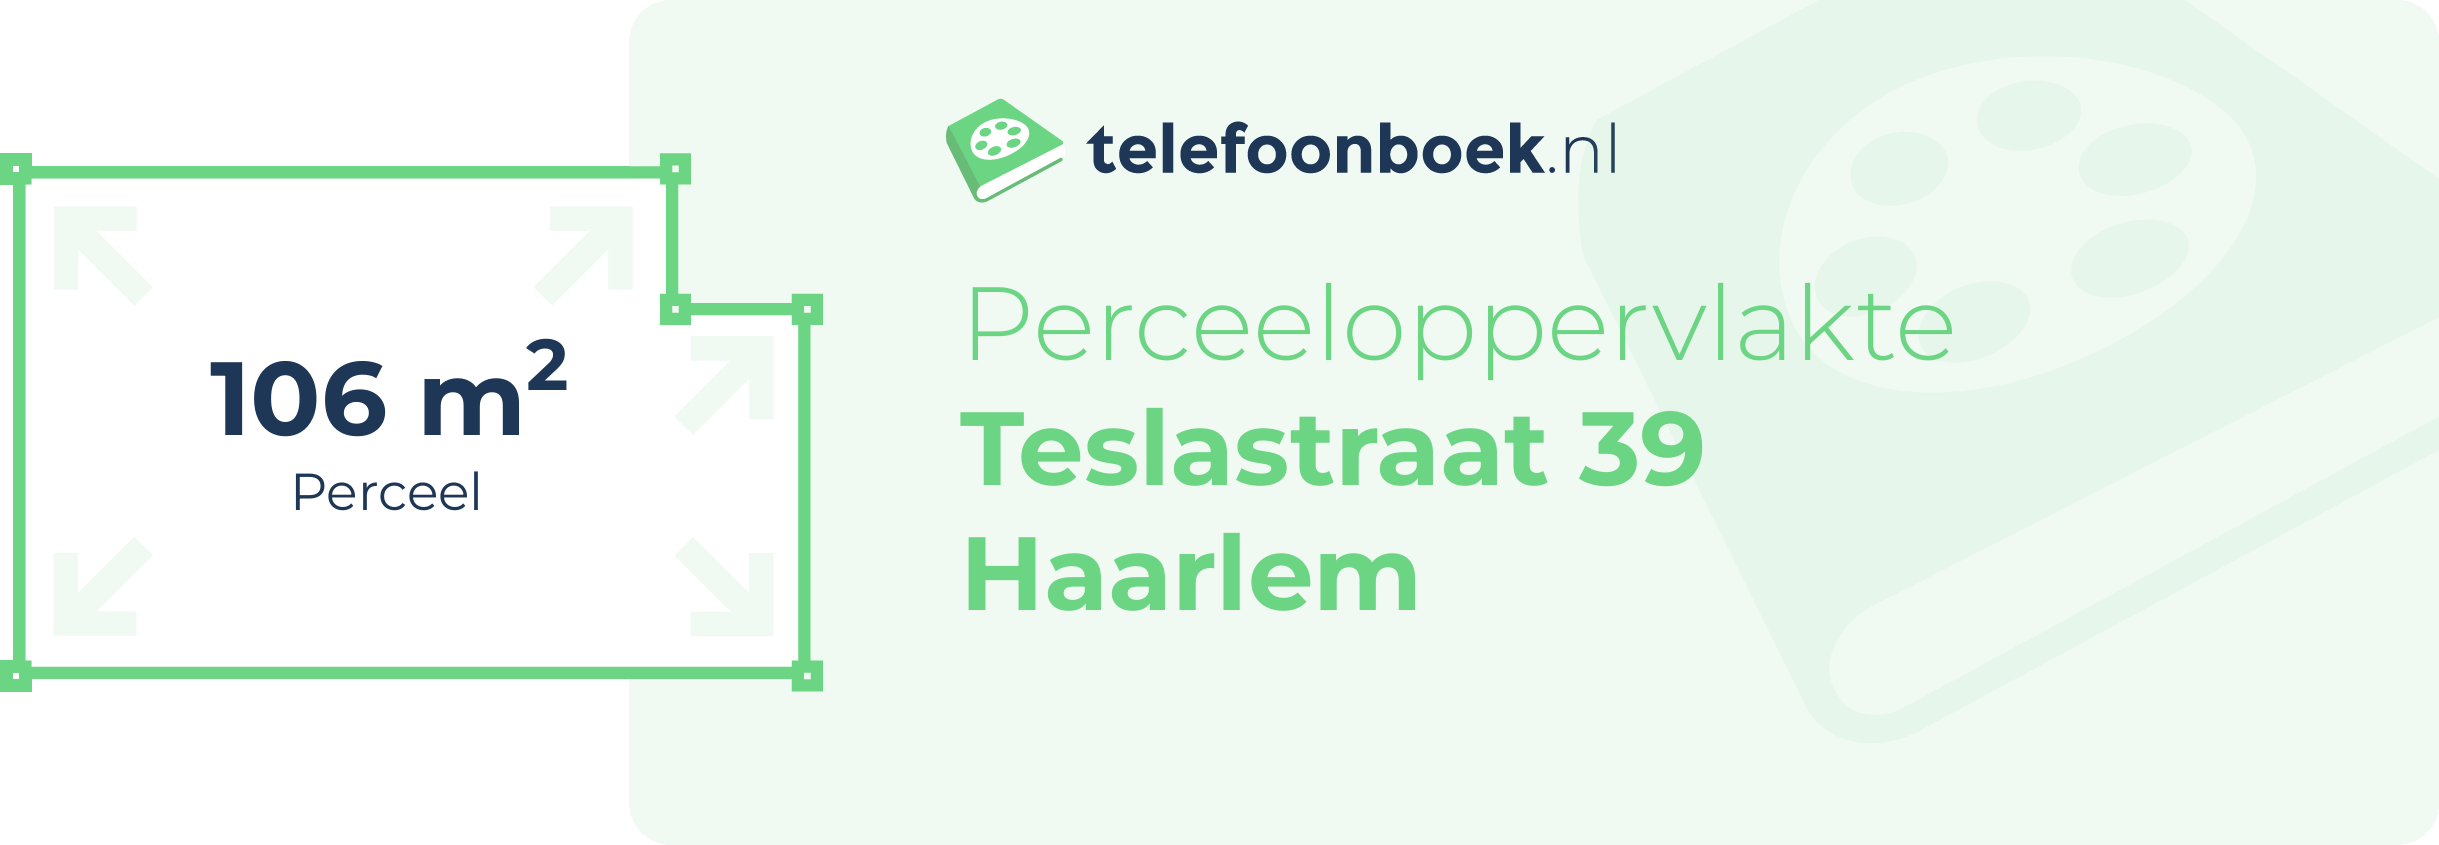 Perceeloppervlakte Teslastraat 39 Haarlem